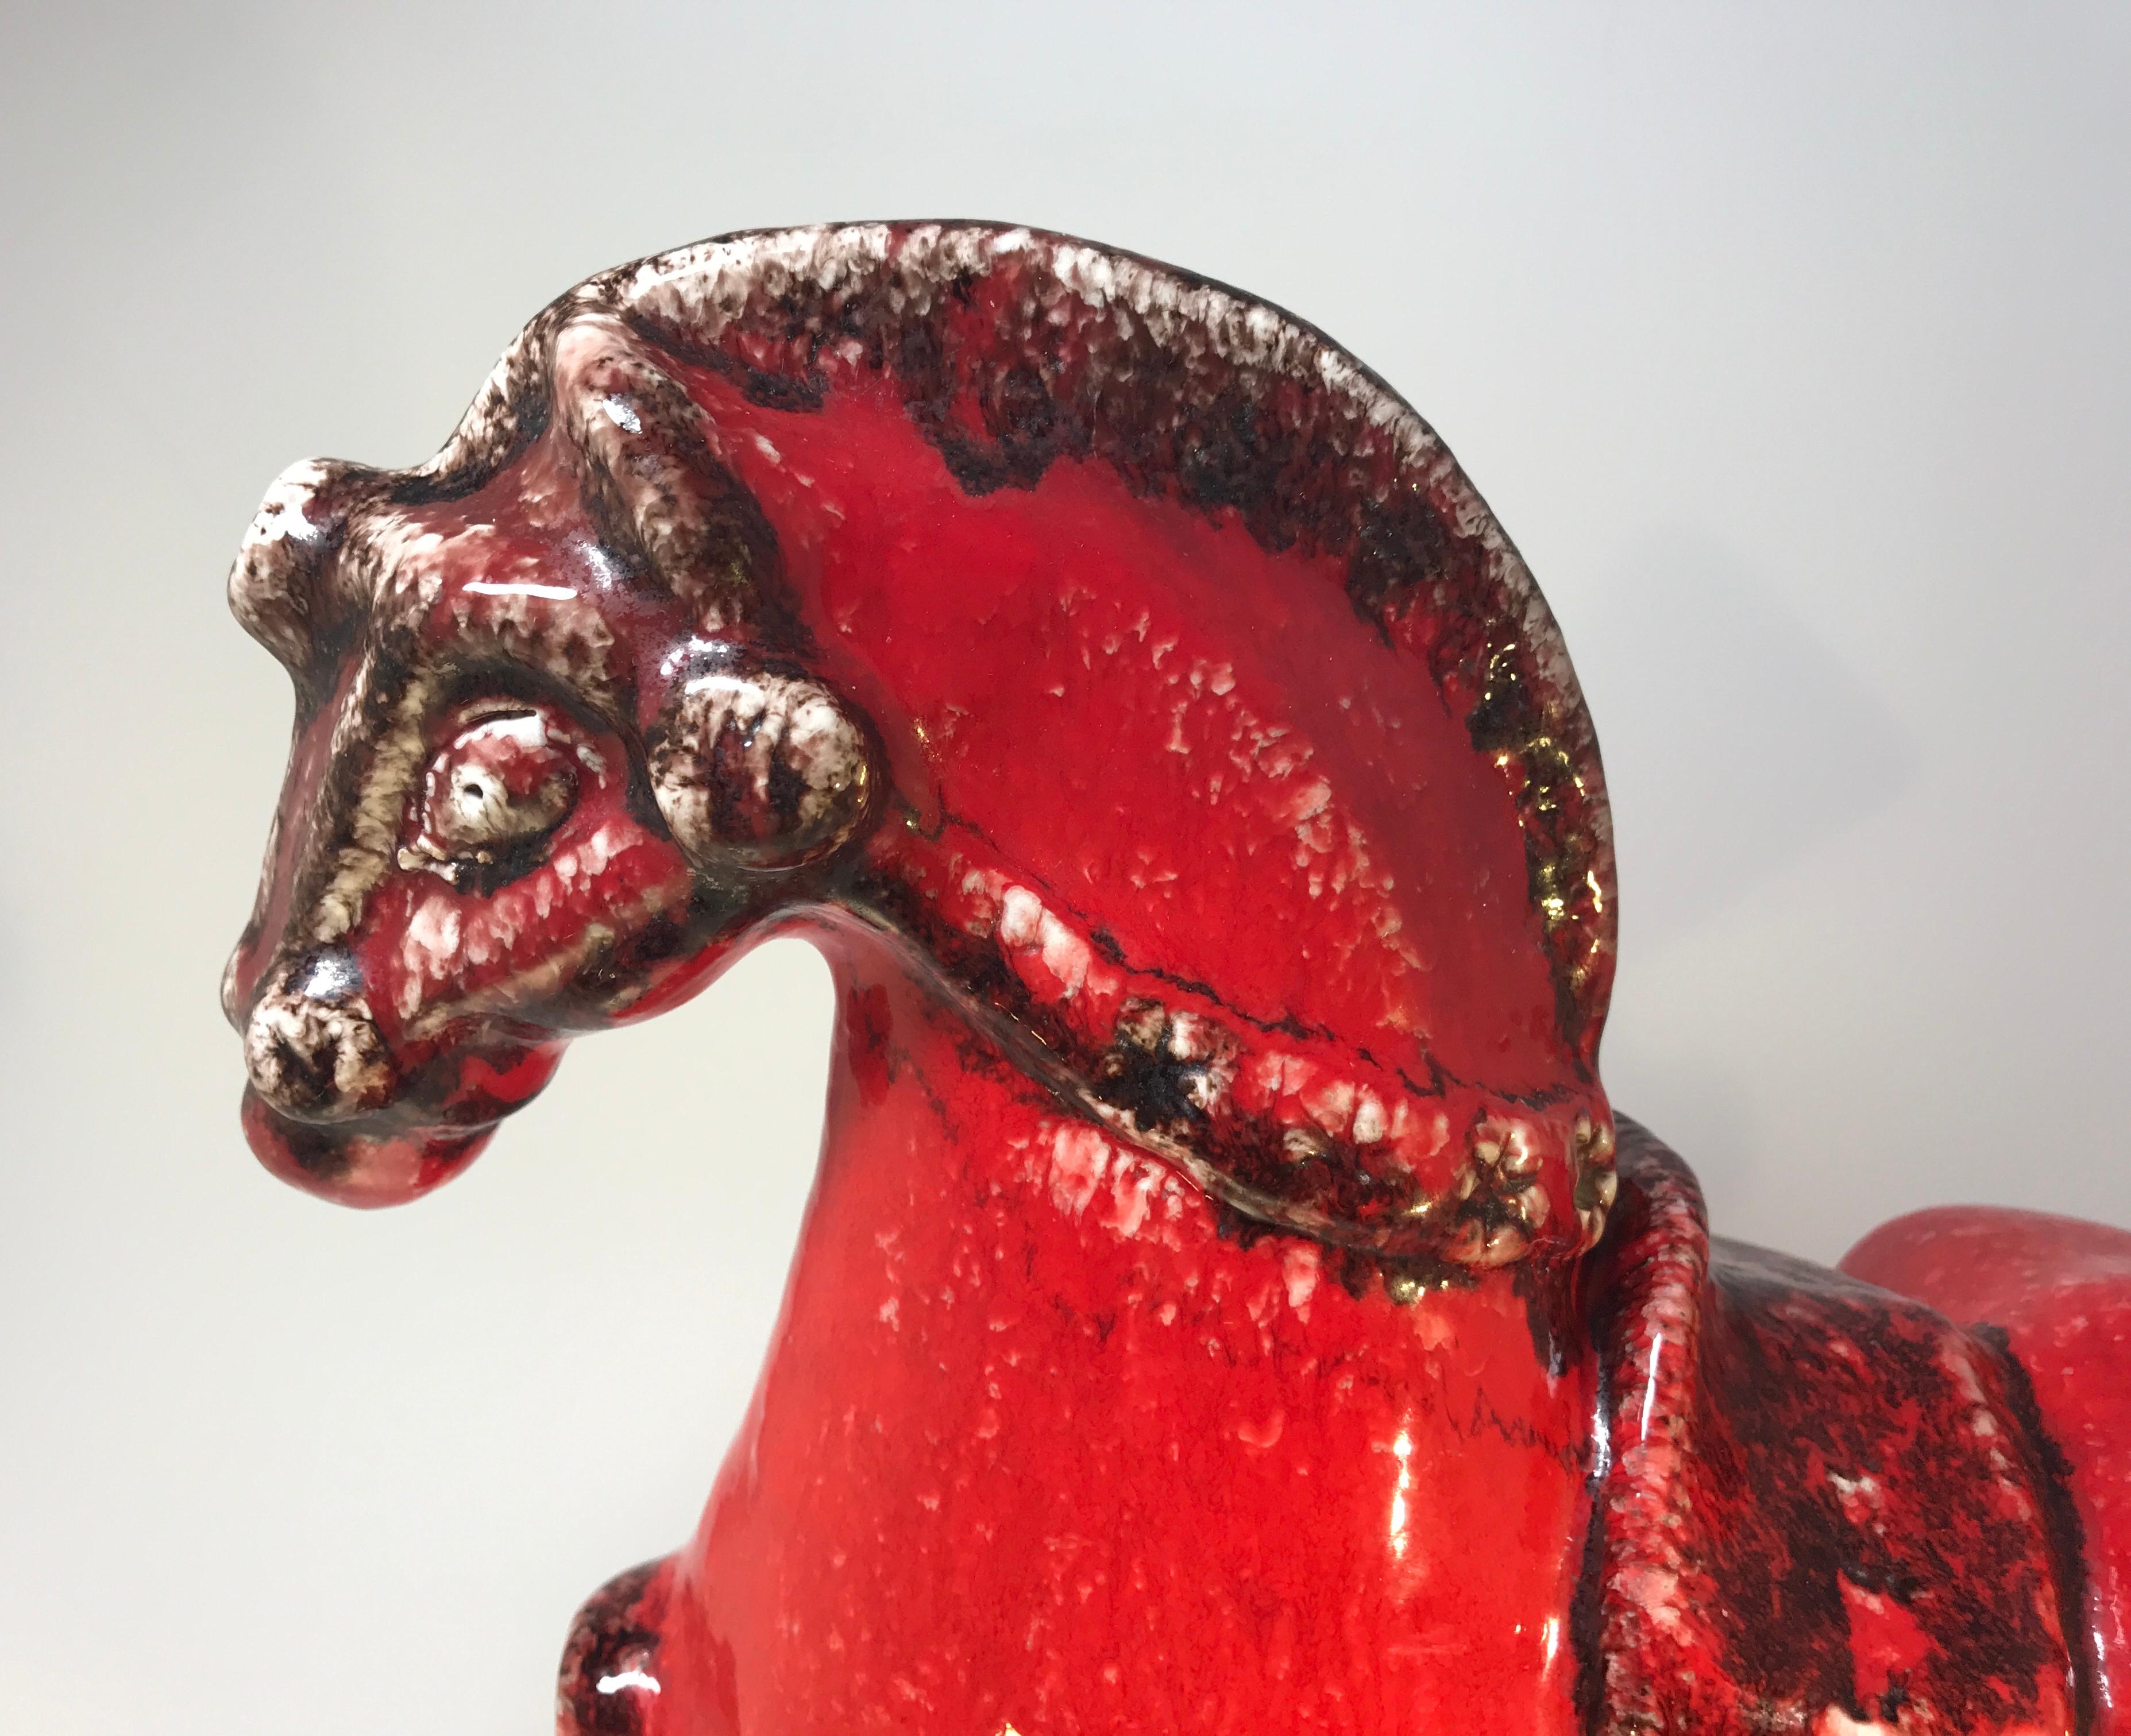 Imposantes und auffälliges, großes, leuchtend rotes und schwarzes italienisches Keramikpferd von Nuovo Rinascemento,
ca. 1960er Jahre
Dies ist ein echtes 'Statement Piece' des italienischen Designs
Maße: Höhe 12 Zoll, Länge 12 Zoll, Tiefe 4,75